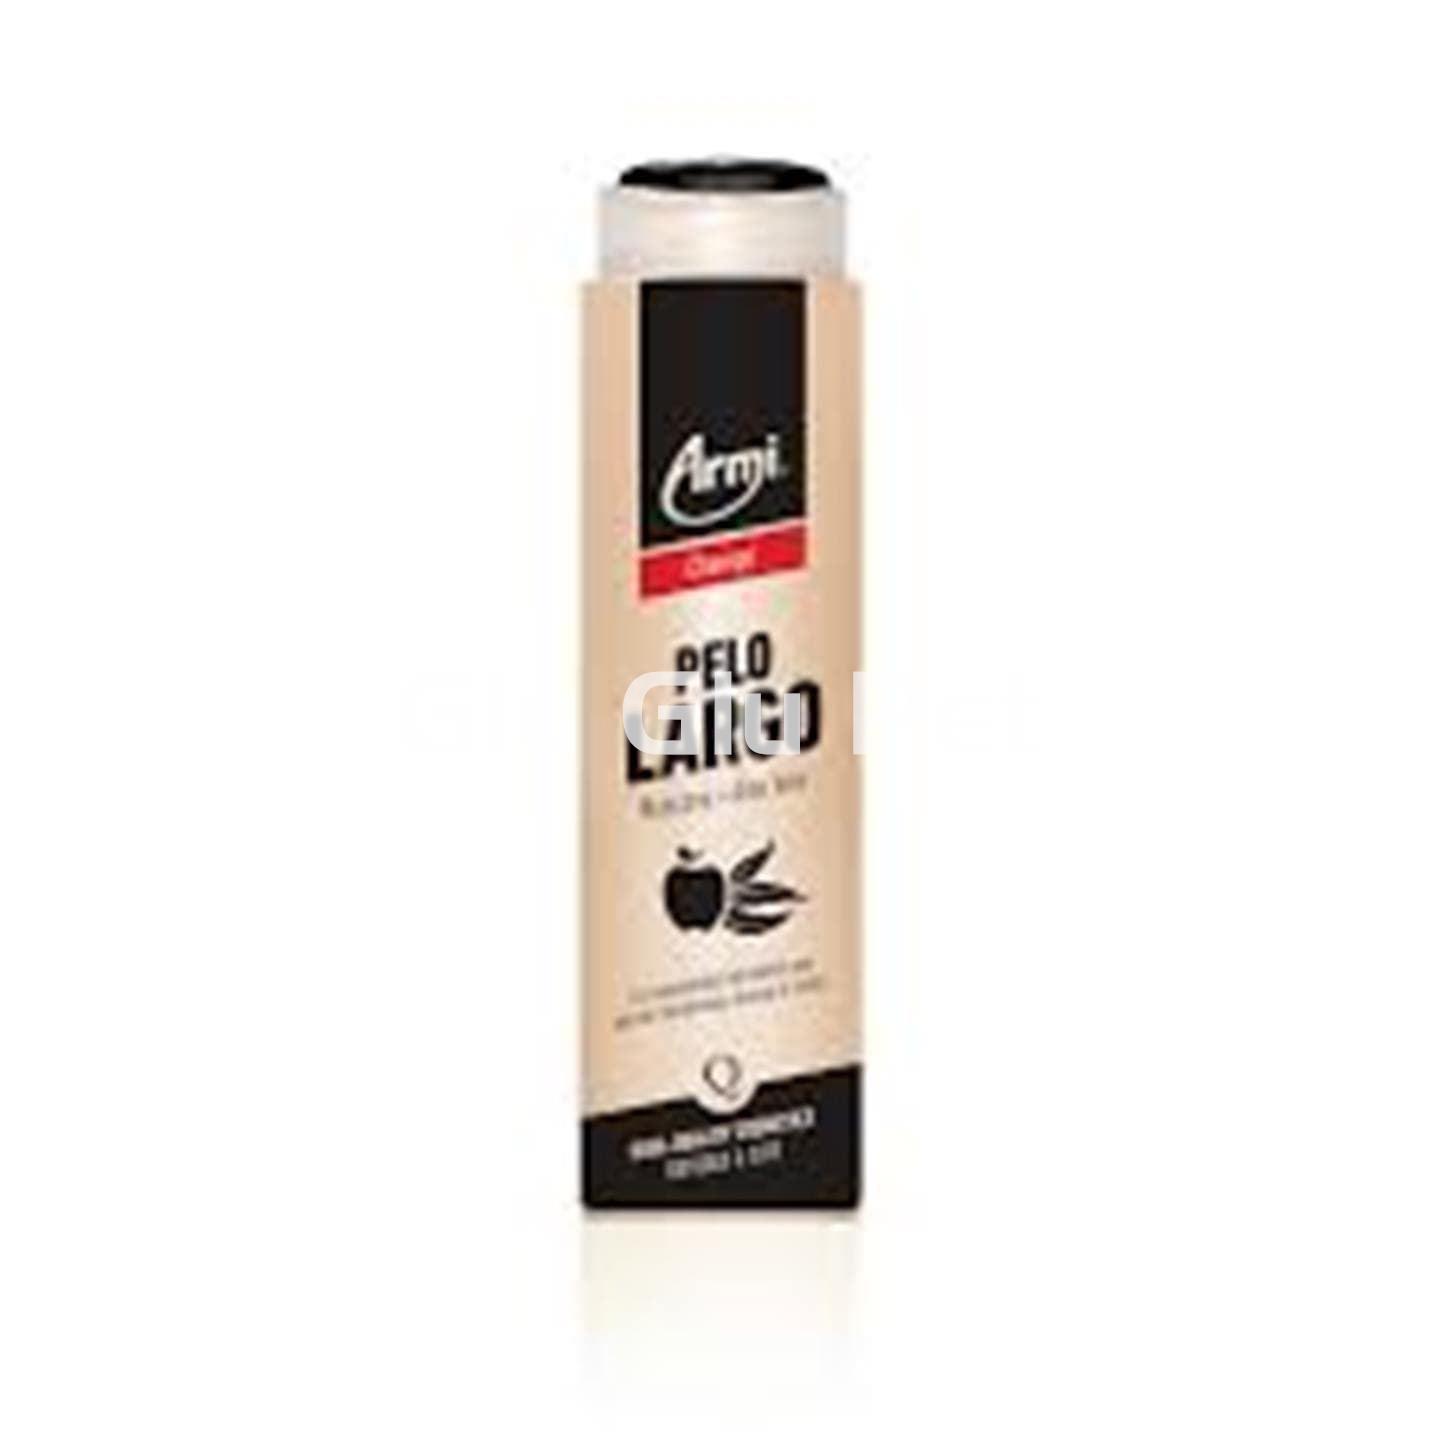 Armi long hair shampoo - Image 1